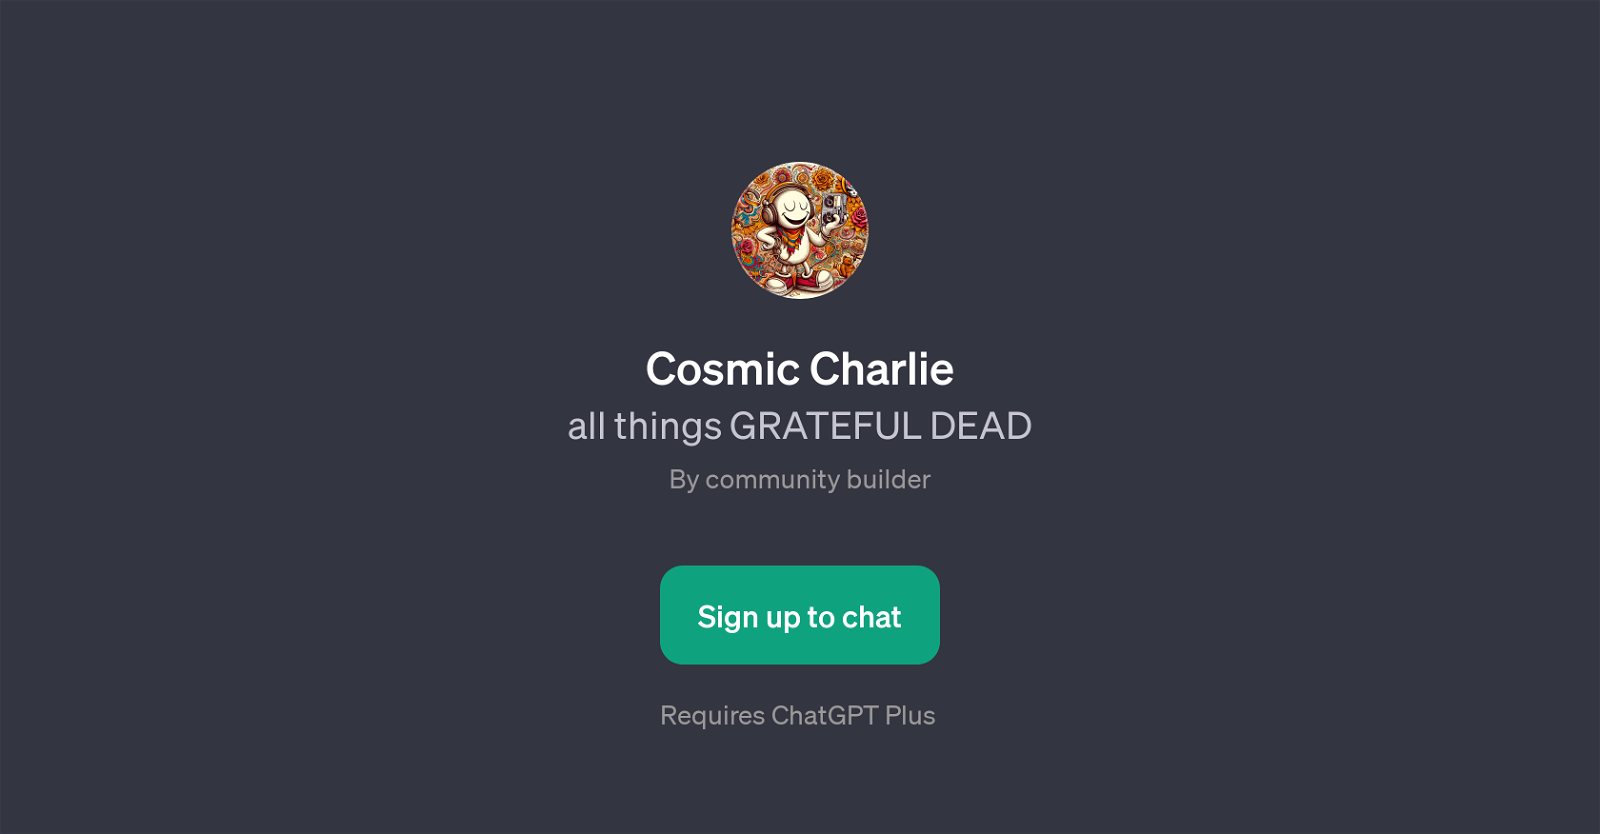 Cosmic Charlie website